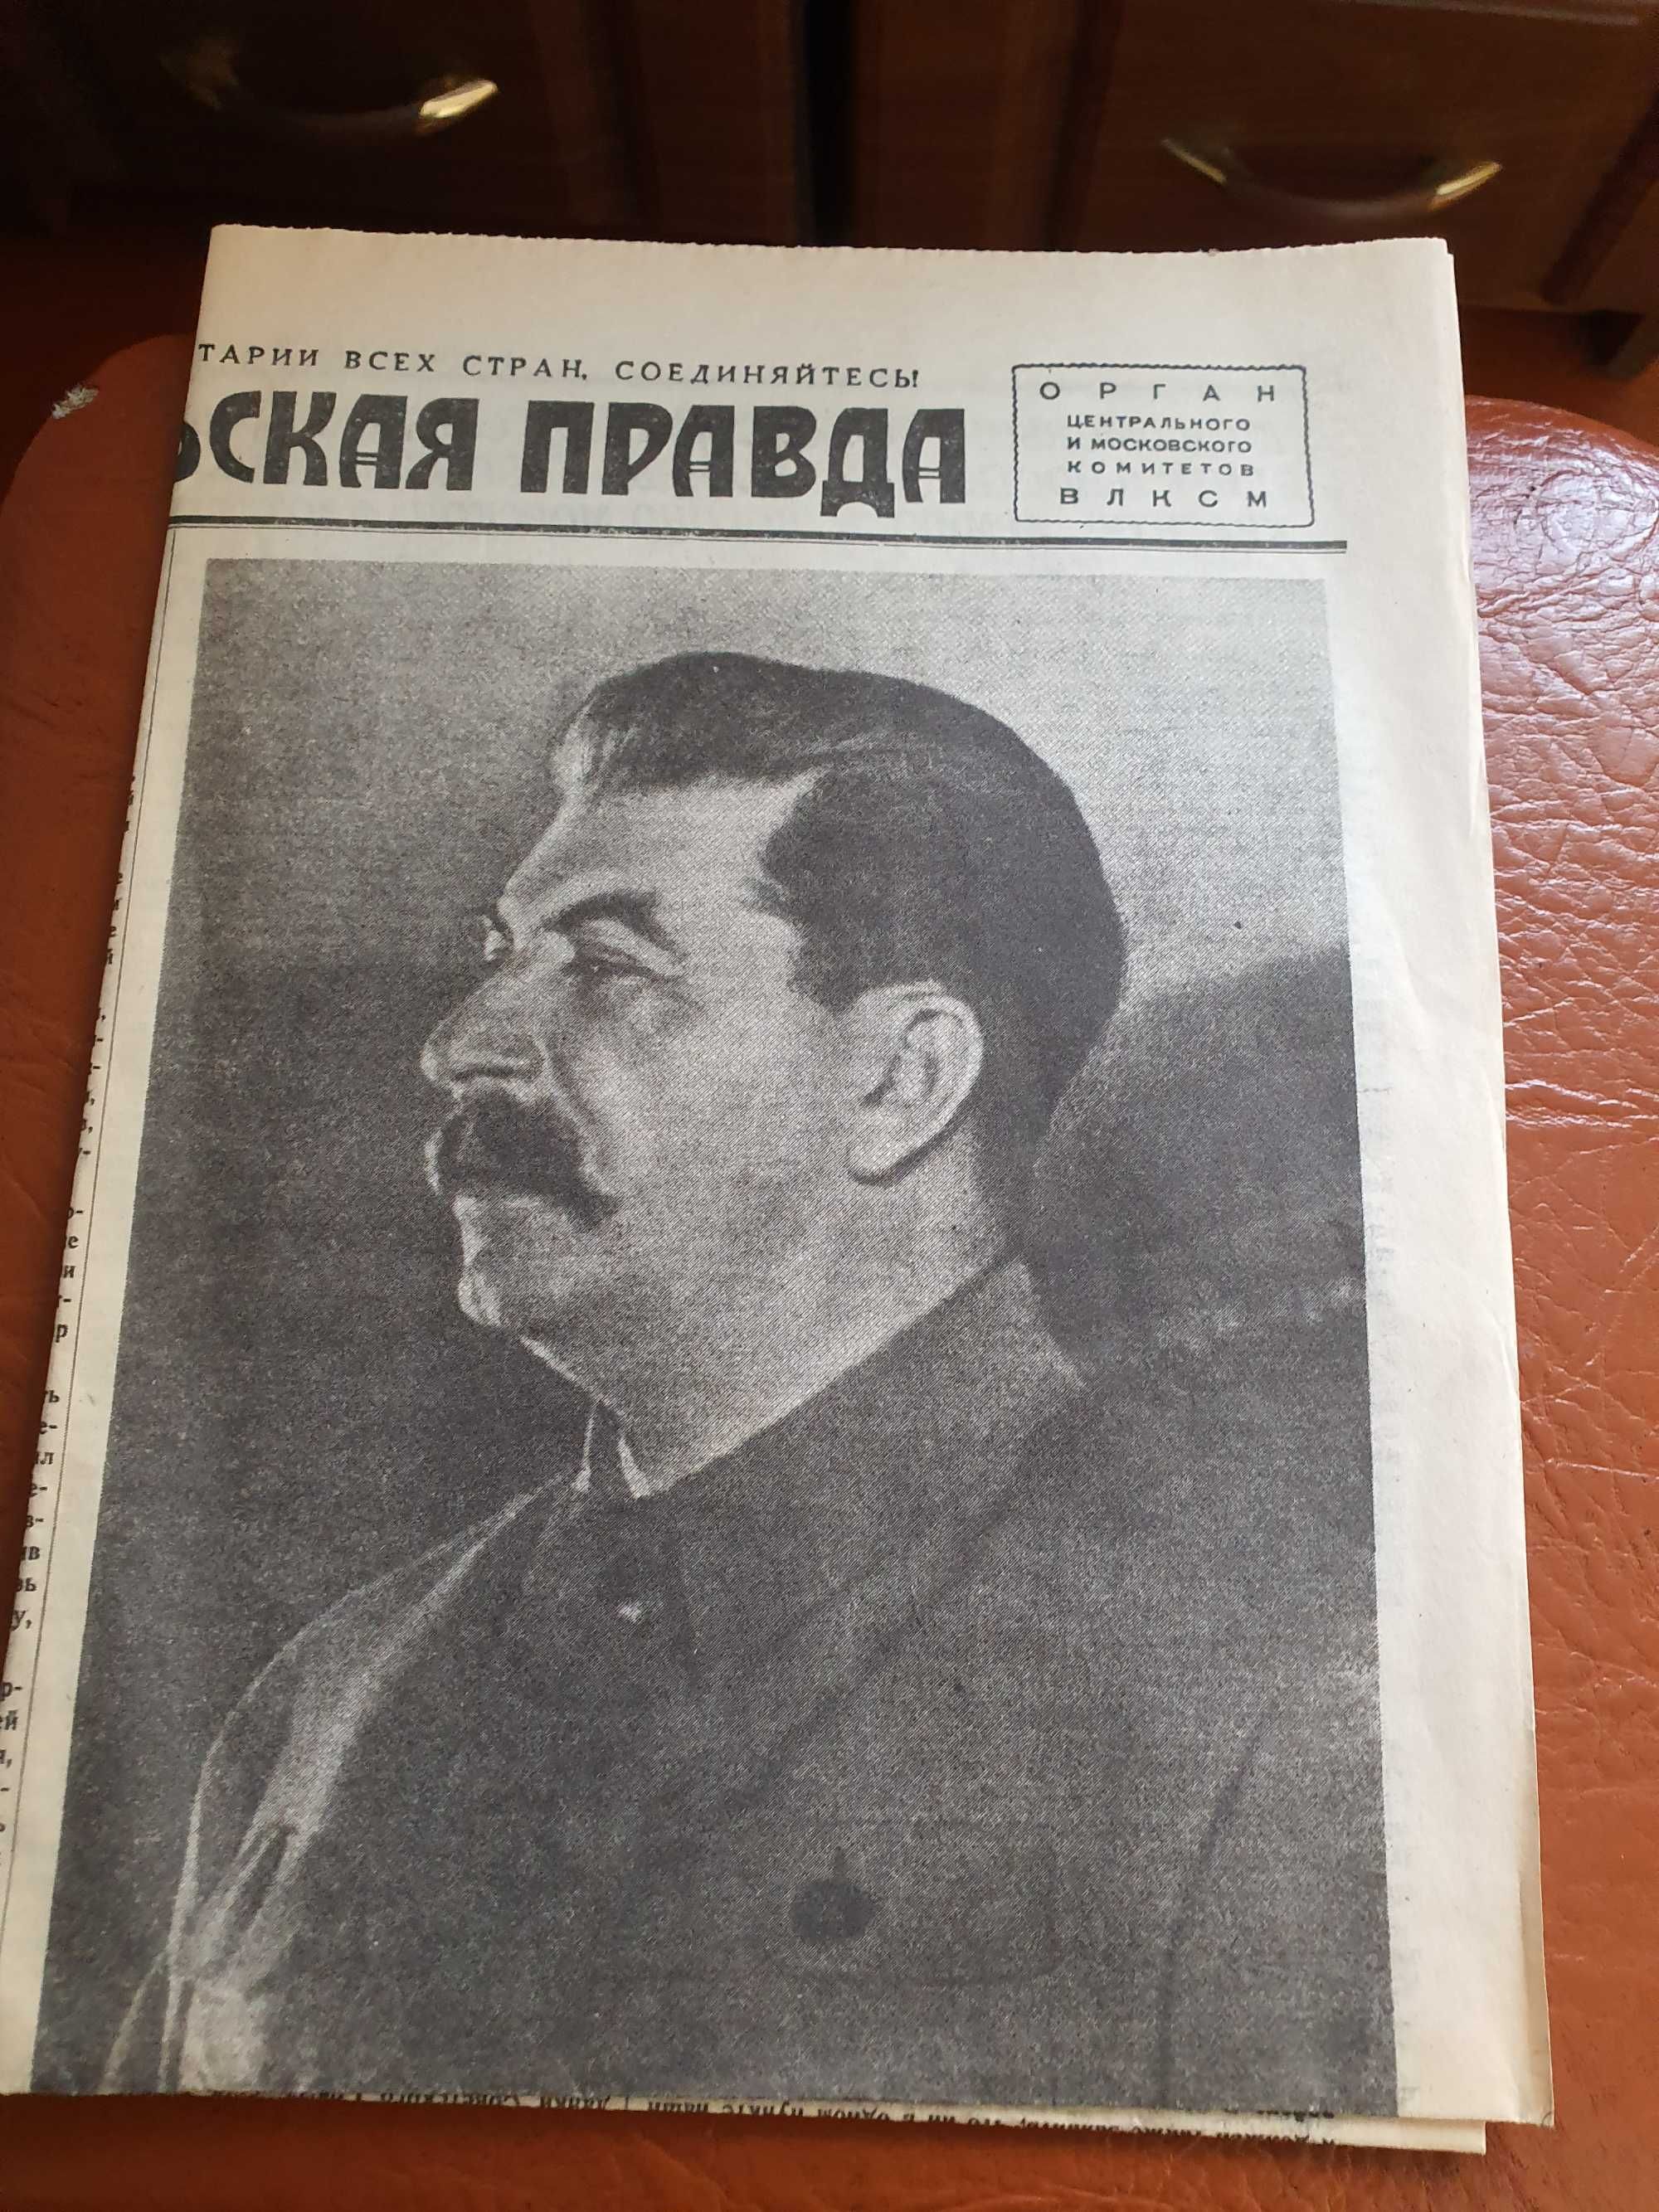 Продоётся газета 1941года